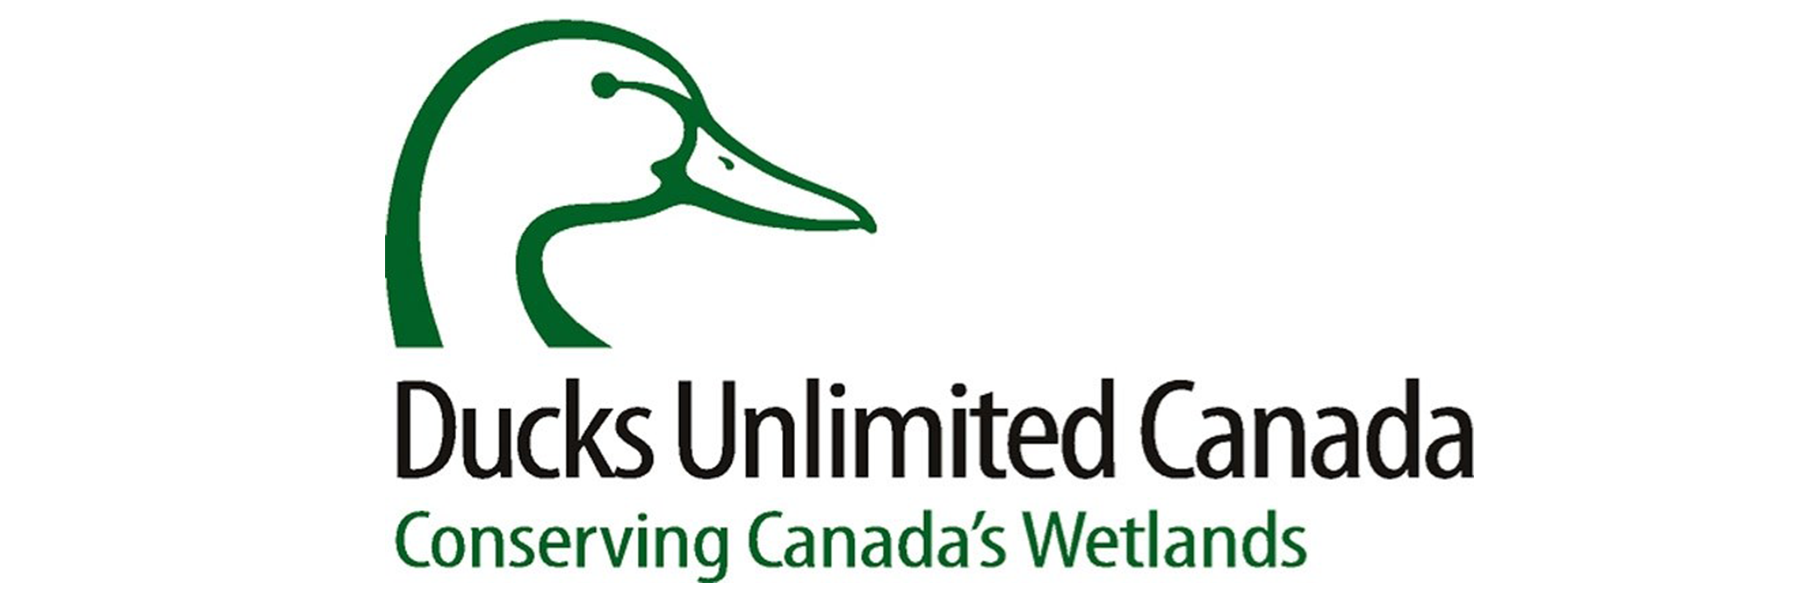 Le logo de Canards Illimités